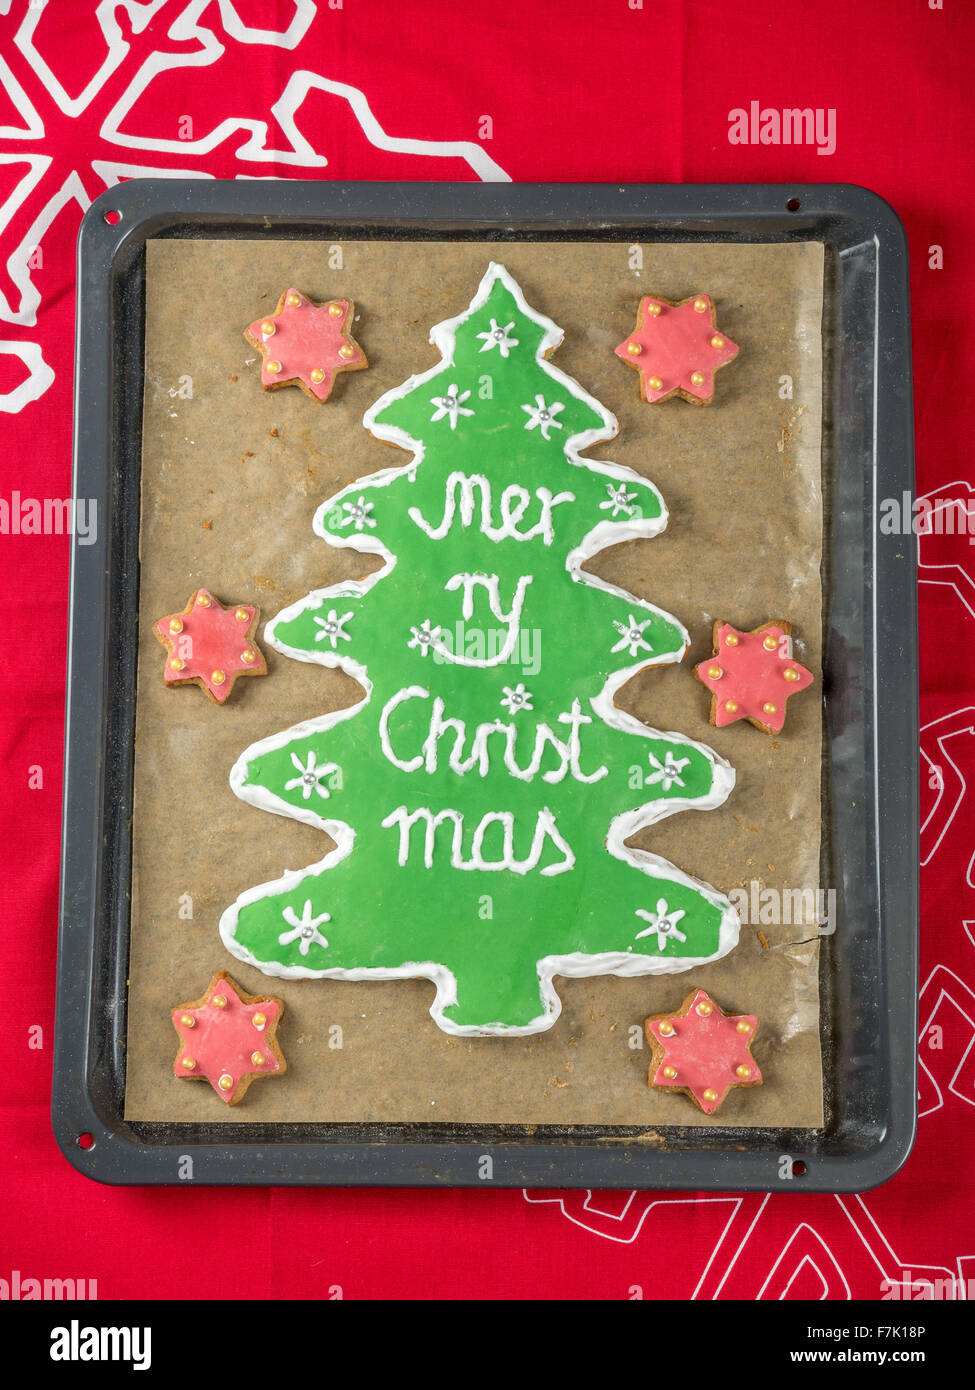 Árbol de Navidad hecho en casa-como gingerbread cookie con guinda verde y Feliz Navidad escrito sobre la bandeja para hornear coloca en el cuadro rojo Foto de stock